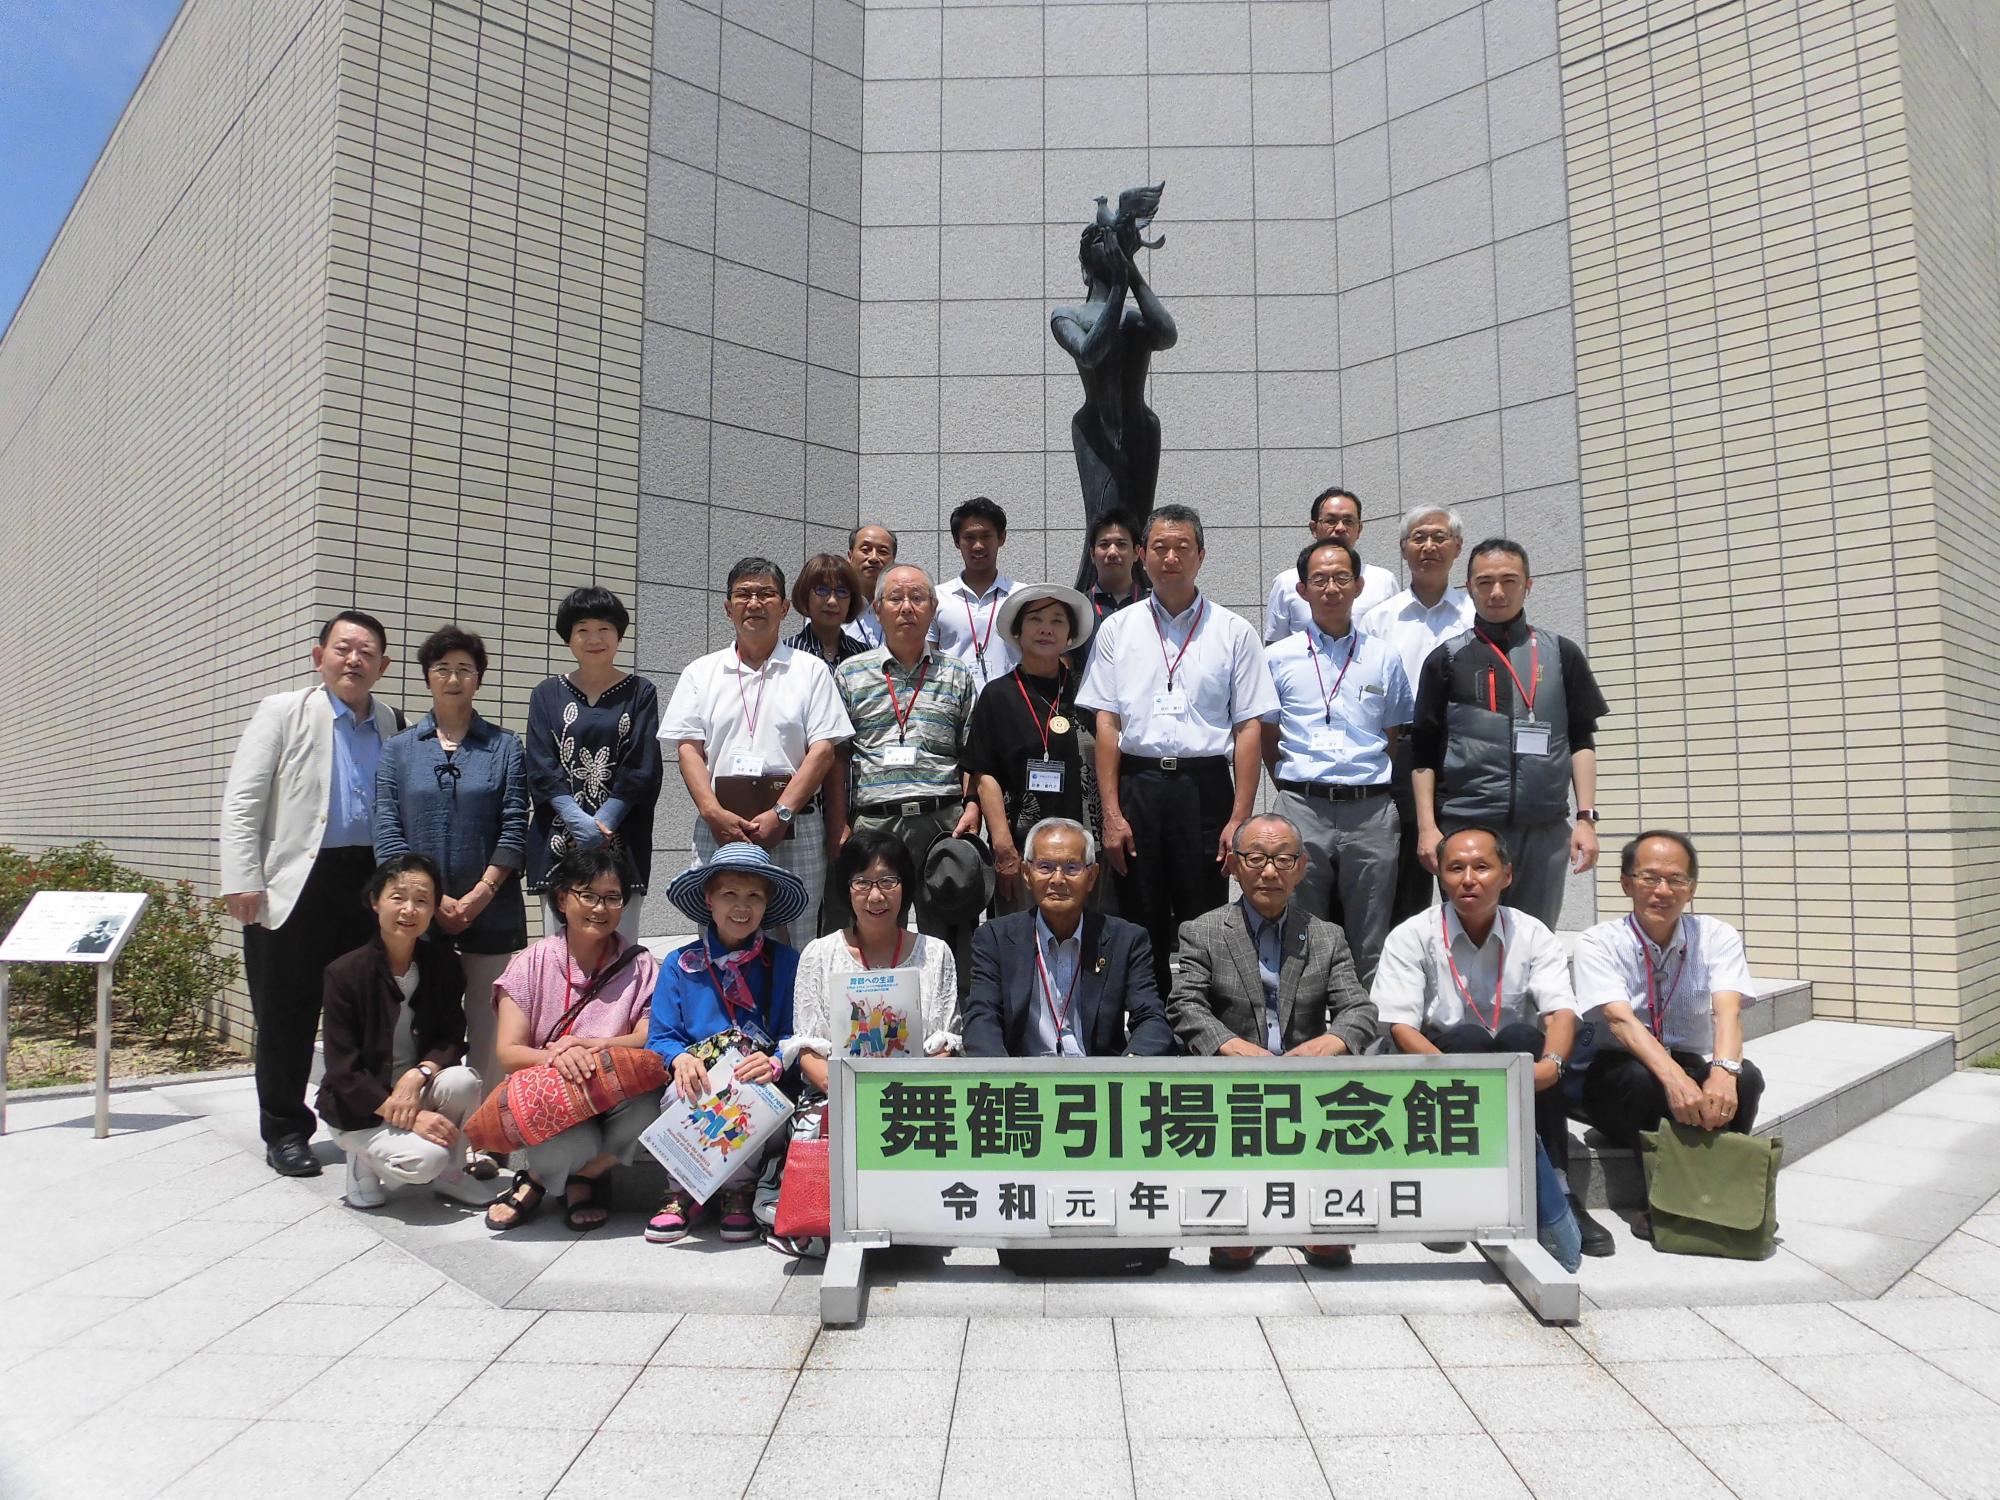 舞鶴引揚記念館の銅像の前で関係者の人達の集合写真